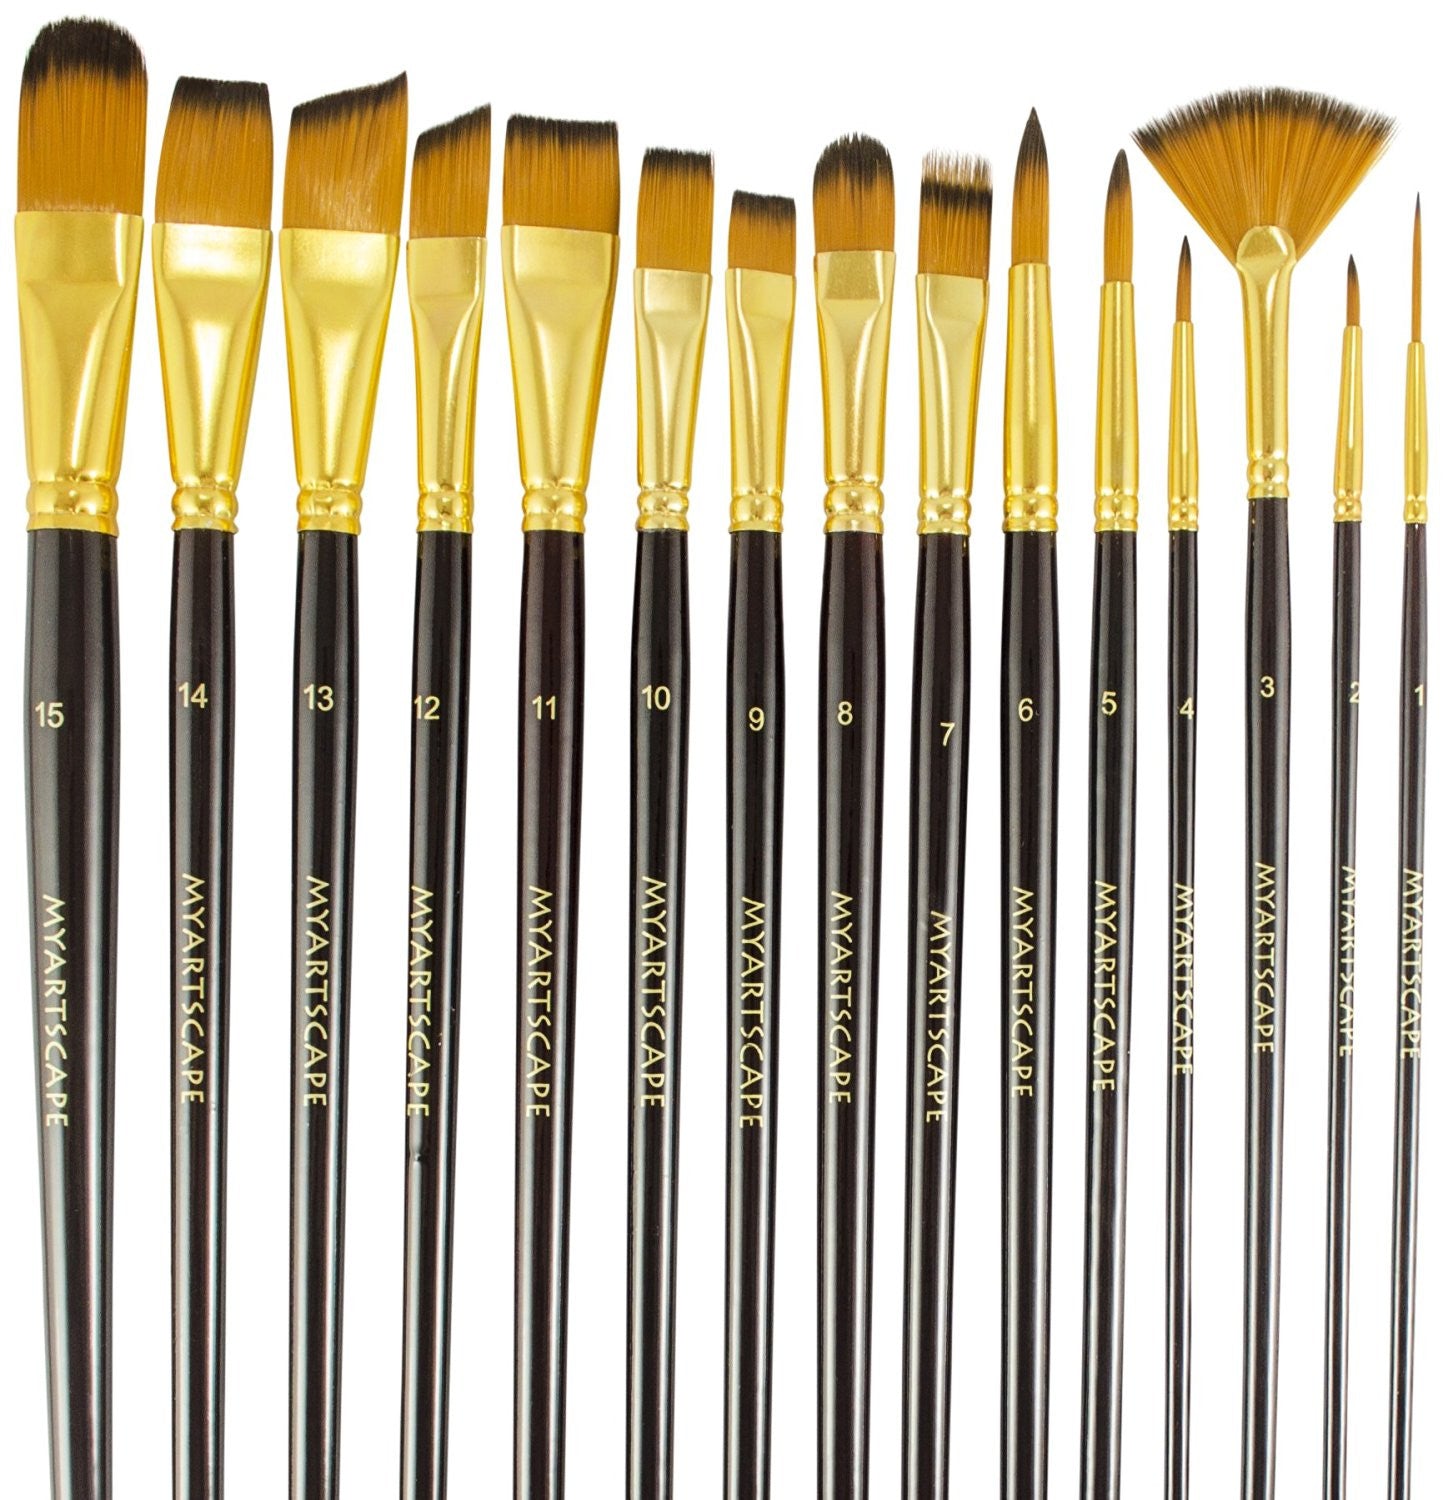 Paint Brushes - 15 Pc Brush Set, Long Handle Artist Paintbrushes with  Travel Holder & Free Gift Box